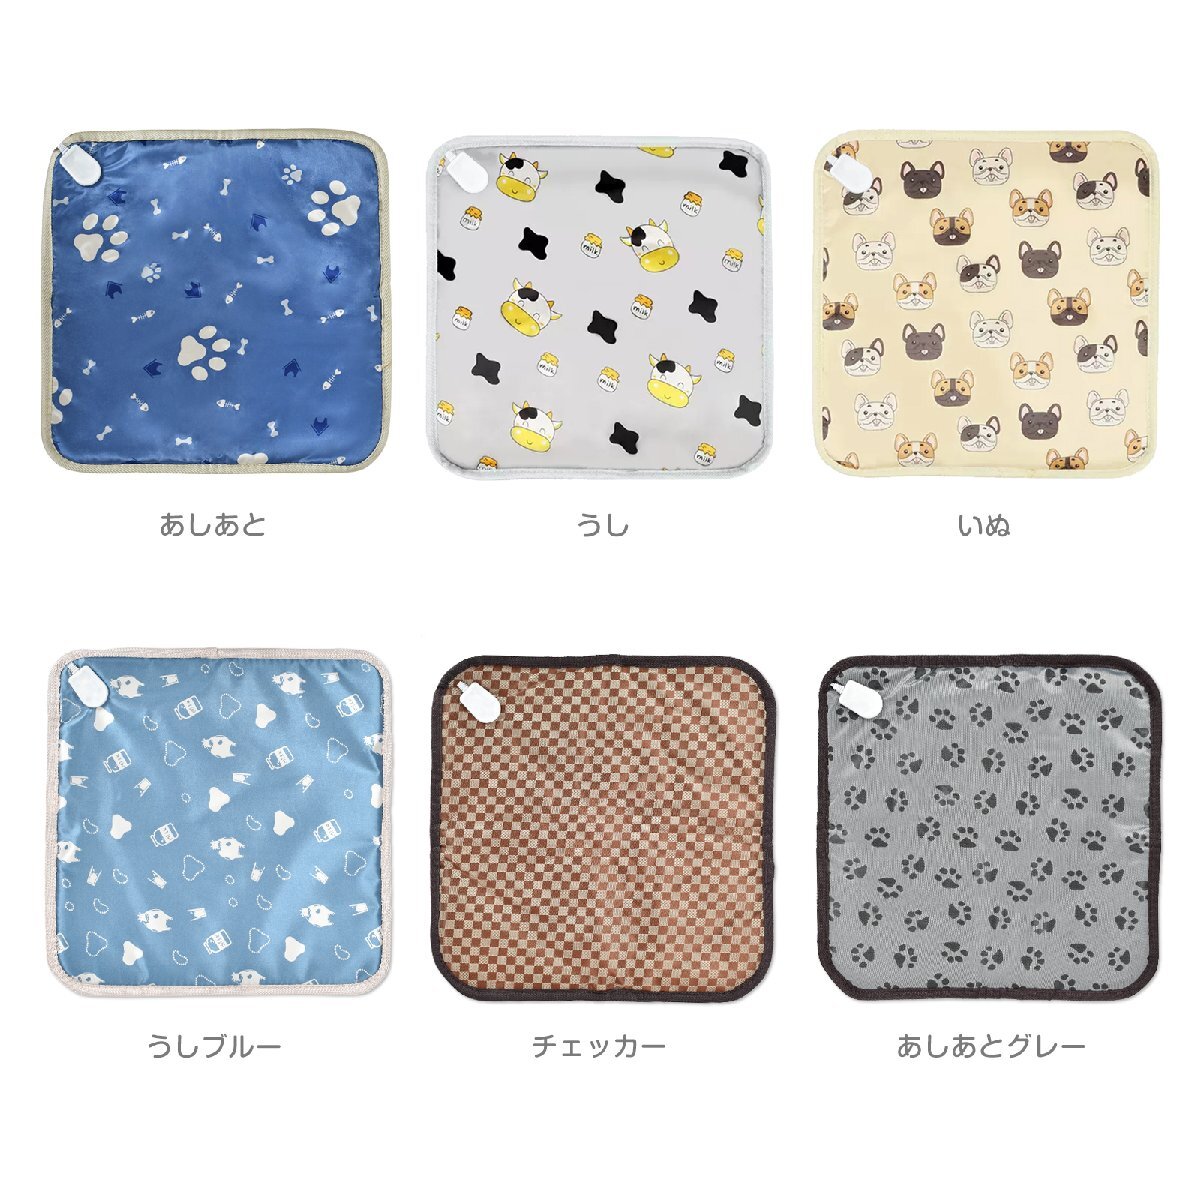 1 иен ковровое покрытие для домашних животных коврик электроковер домашнее животное коврик товары для домашних животных модный собака Minya g собака водонепроницаемый напольное покрытие pt078